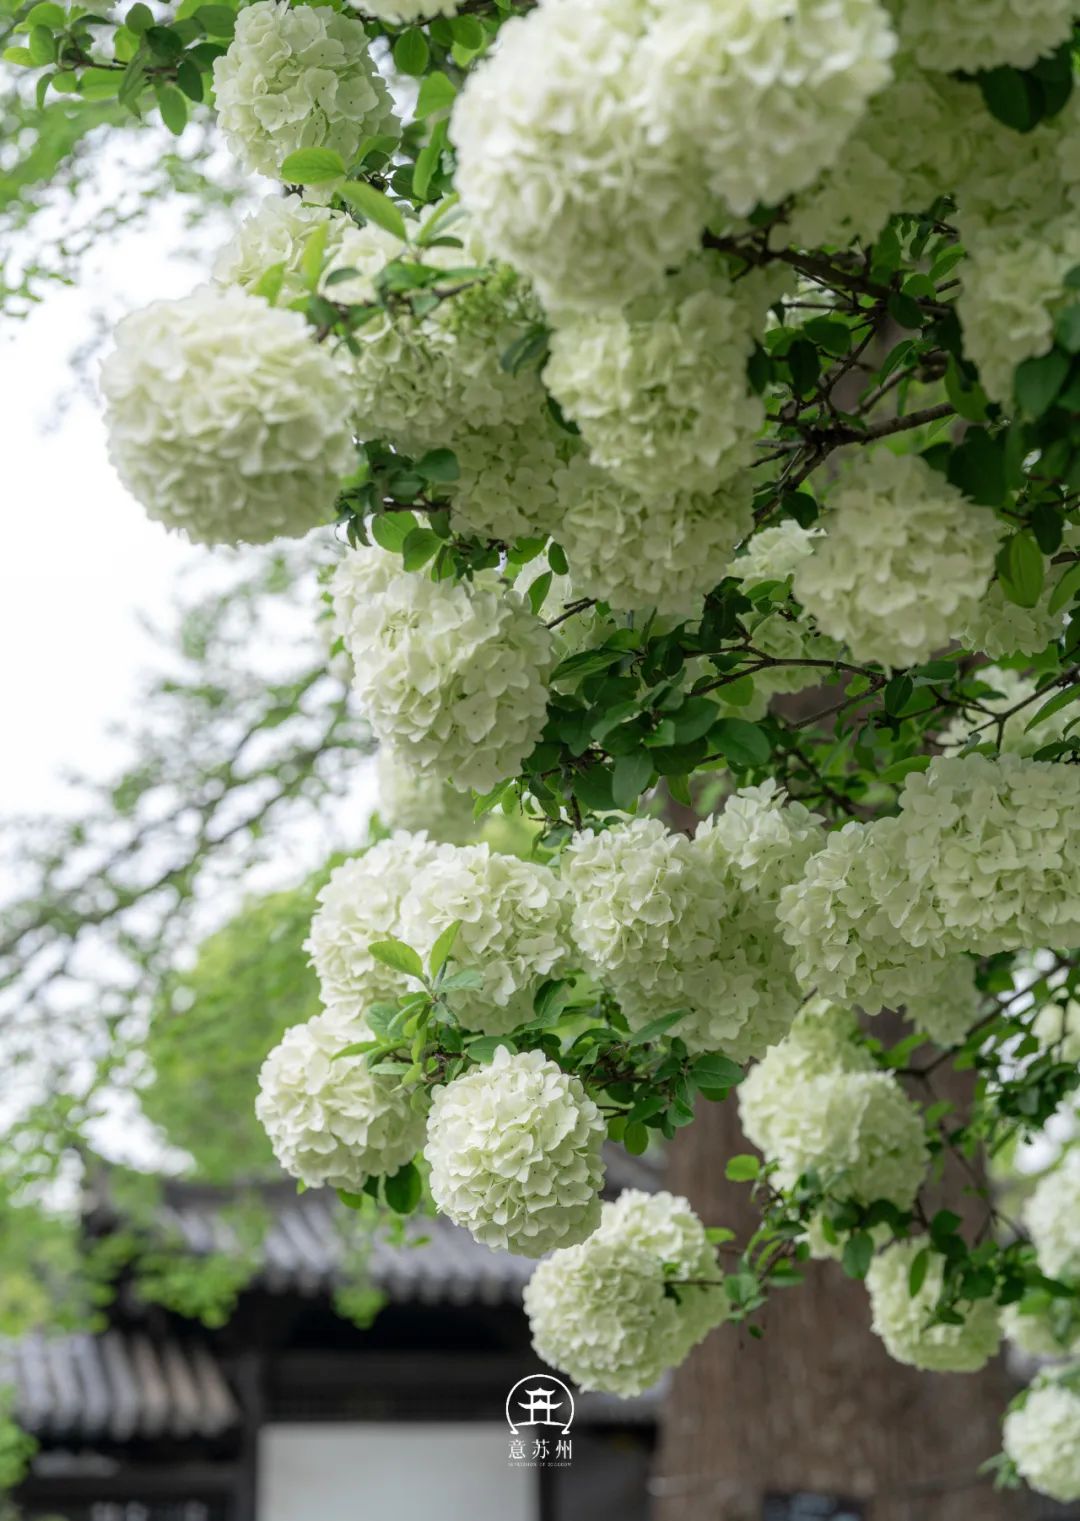 Tô Châu mùa hoa mộc tú cầu: Cả thành phố khoác lên tấm áo cầu hoa trắng tinh khôi, đứng đâu cũng có ảnh đẹp- Ảnh 5.